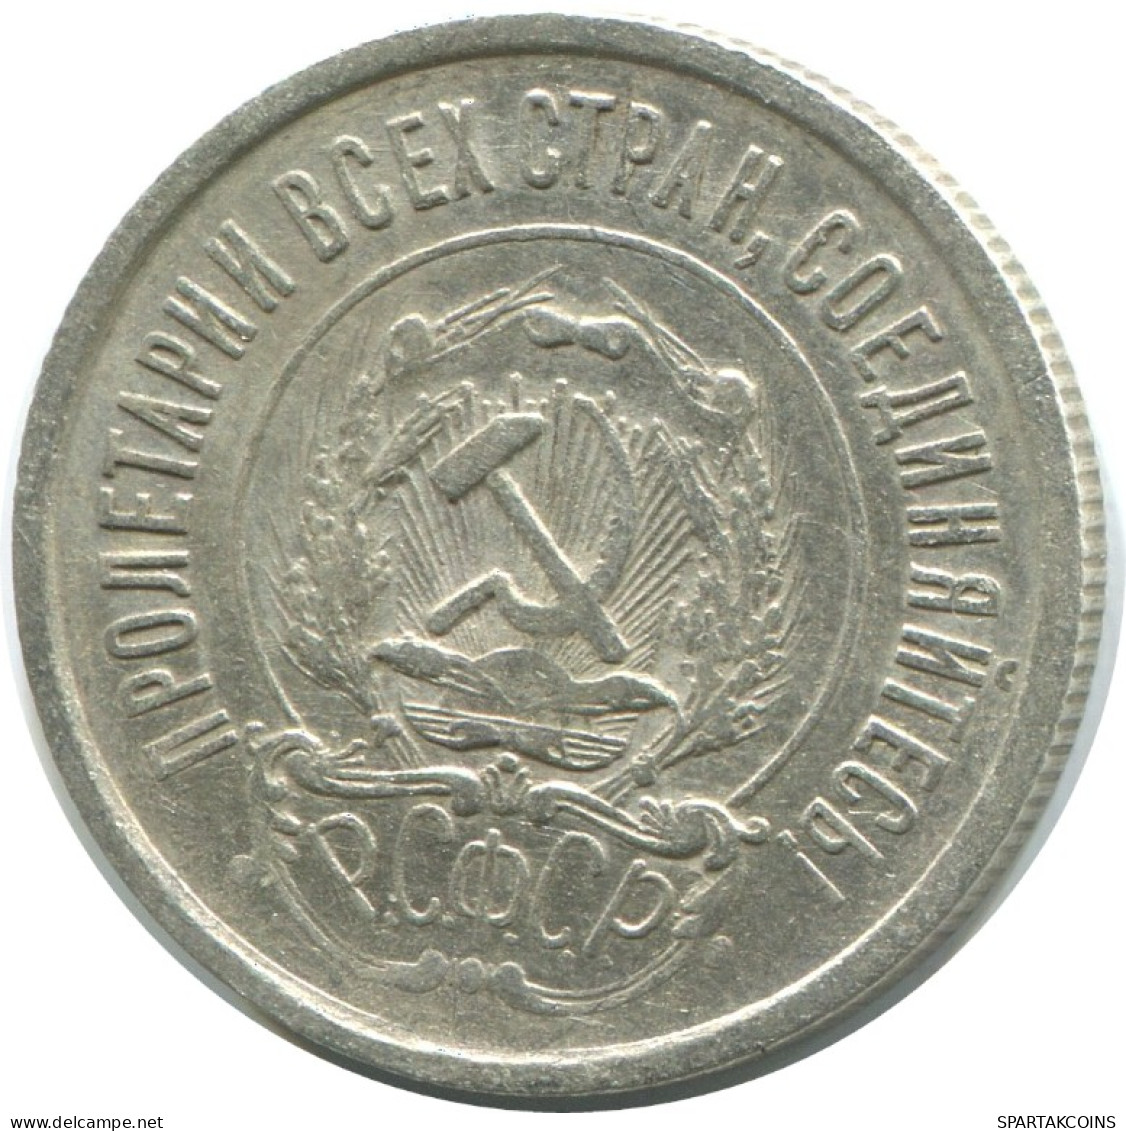 20 KOPEKS 1923 RUSSLAND RUSSIA RSFSR SILBER Münze HIGH GRADE #AF408.4.D.A - Rusia